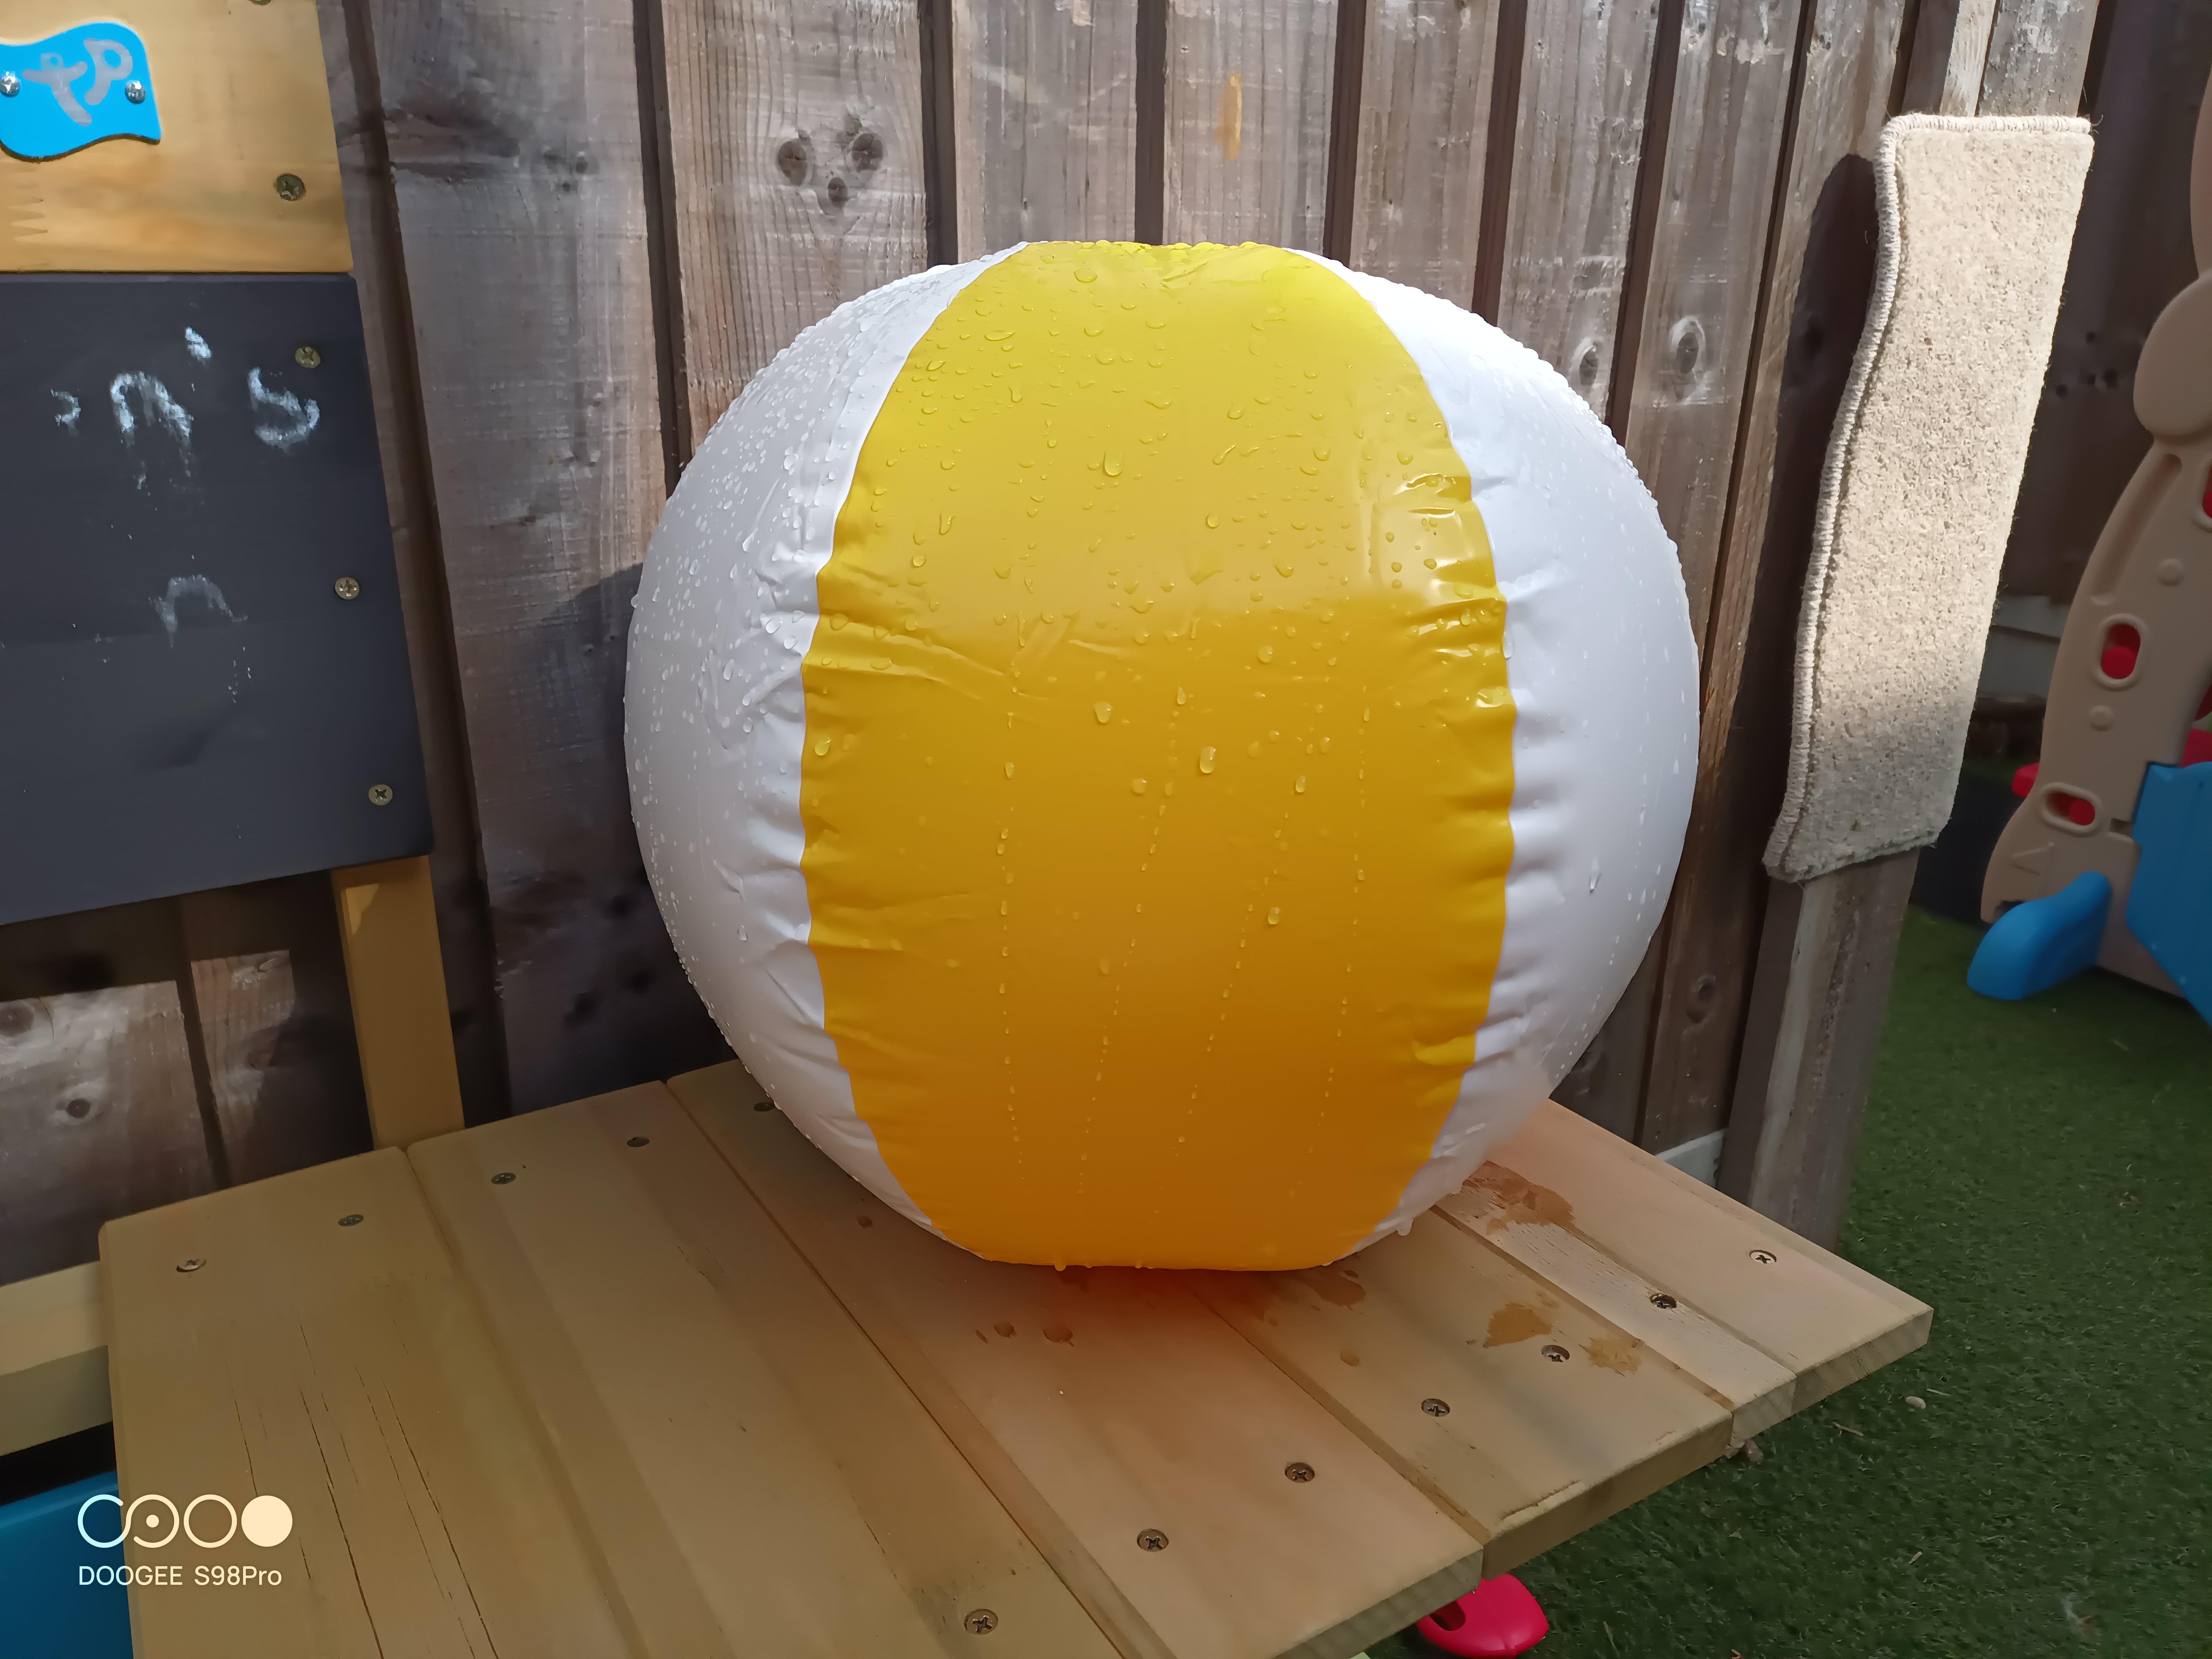 Doogee S98 Pro камера пляжный мяч на открытом воздухе